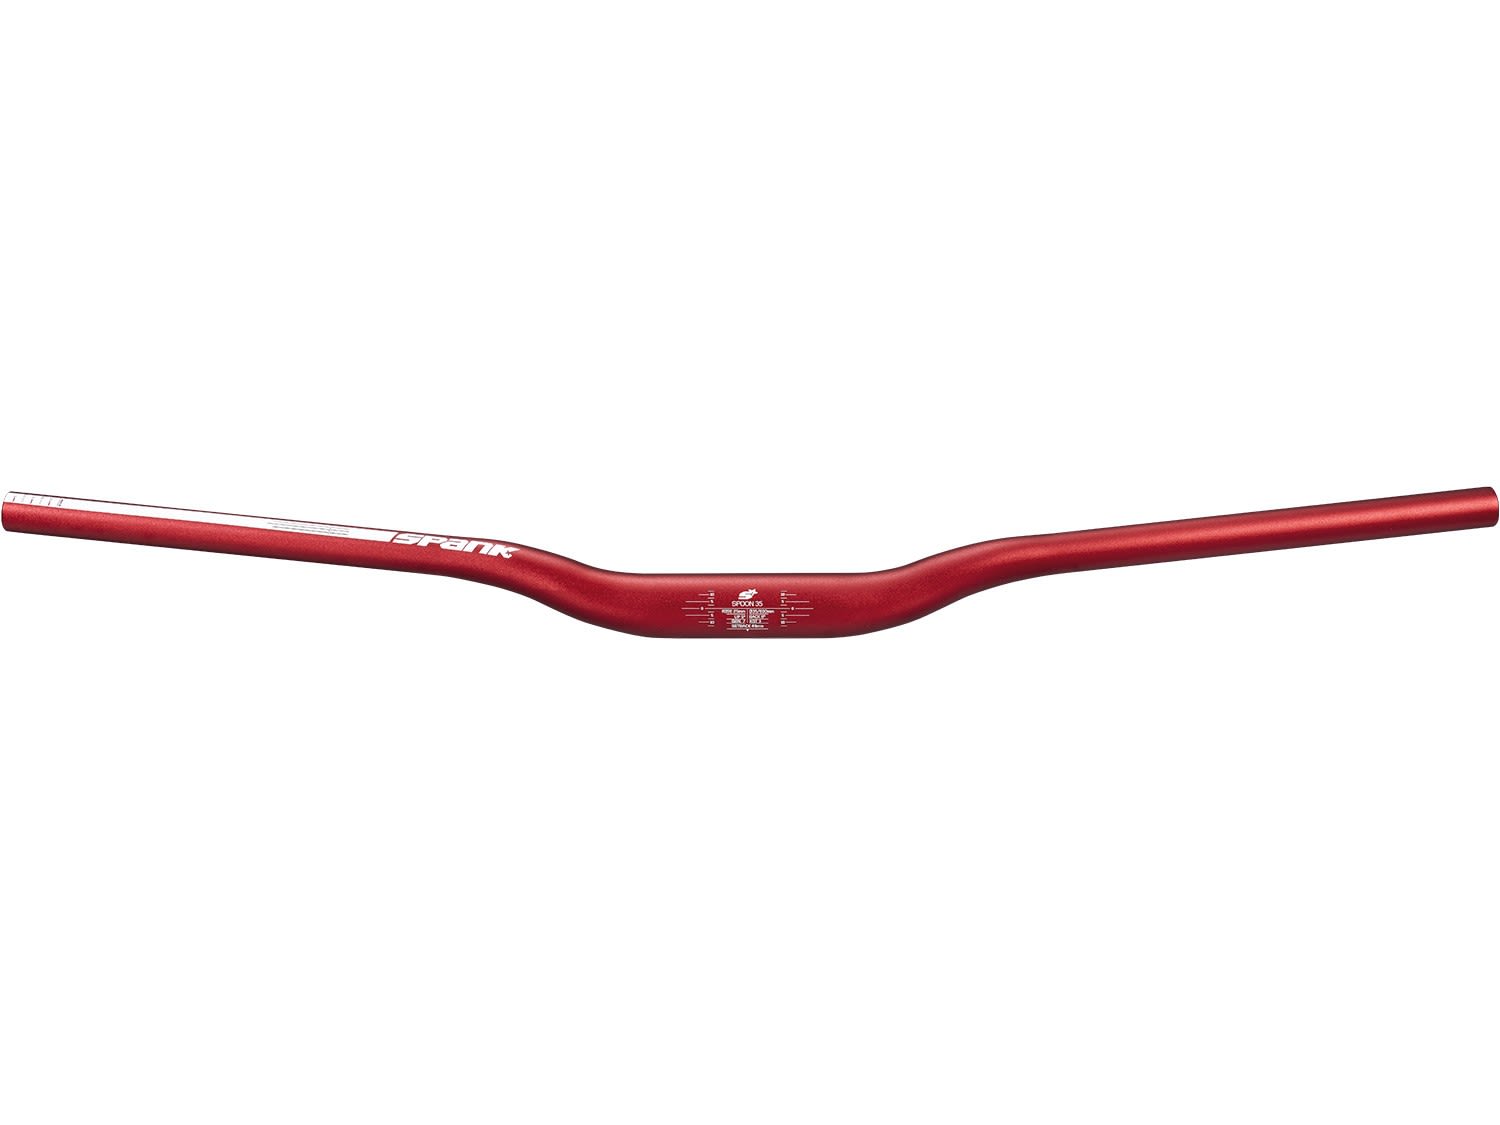 Spank Spoon 35 Fahrradlenker Rot, Zubehör, Reparatur & Wartung, Größe 60 mm - Farbe Red SP-BAR-0069